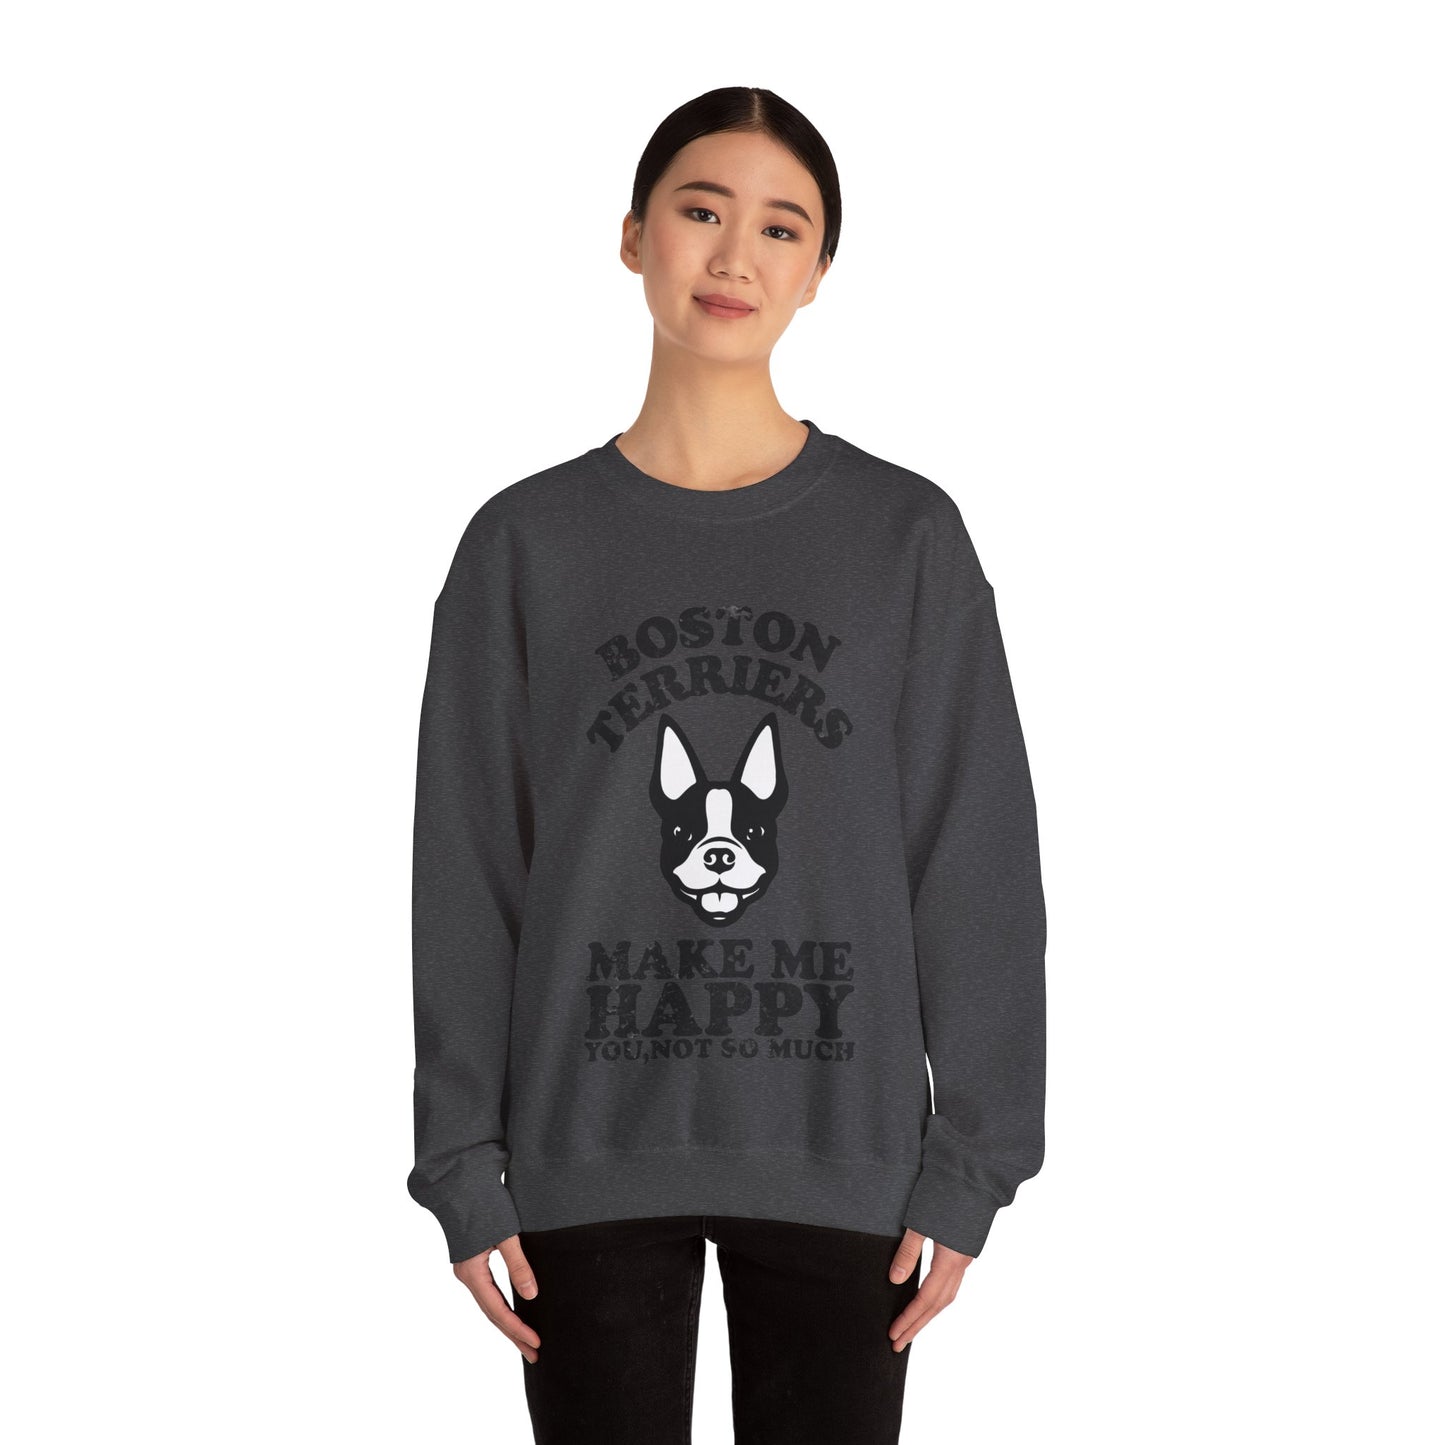 Jones - Unisex Sweatshirt for Boston Terrier lovers